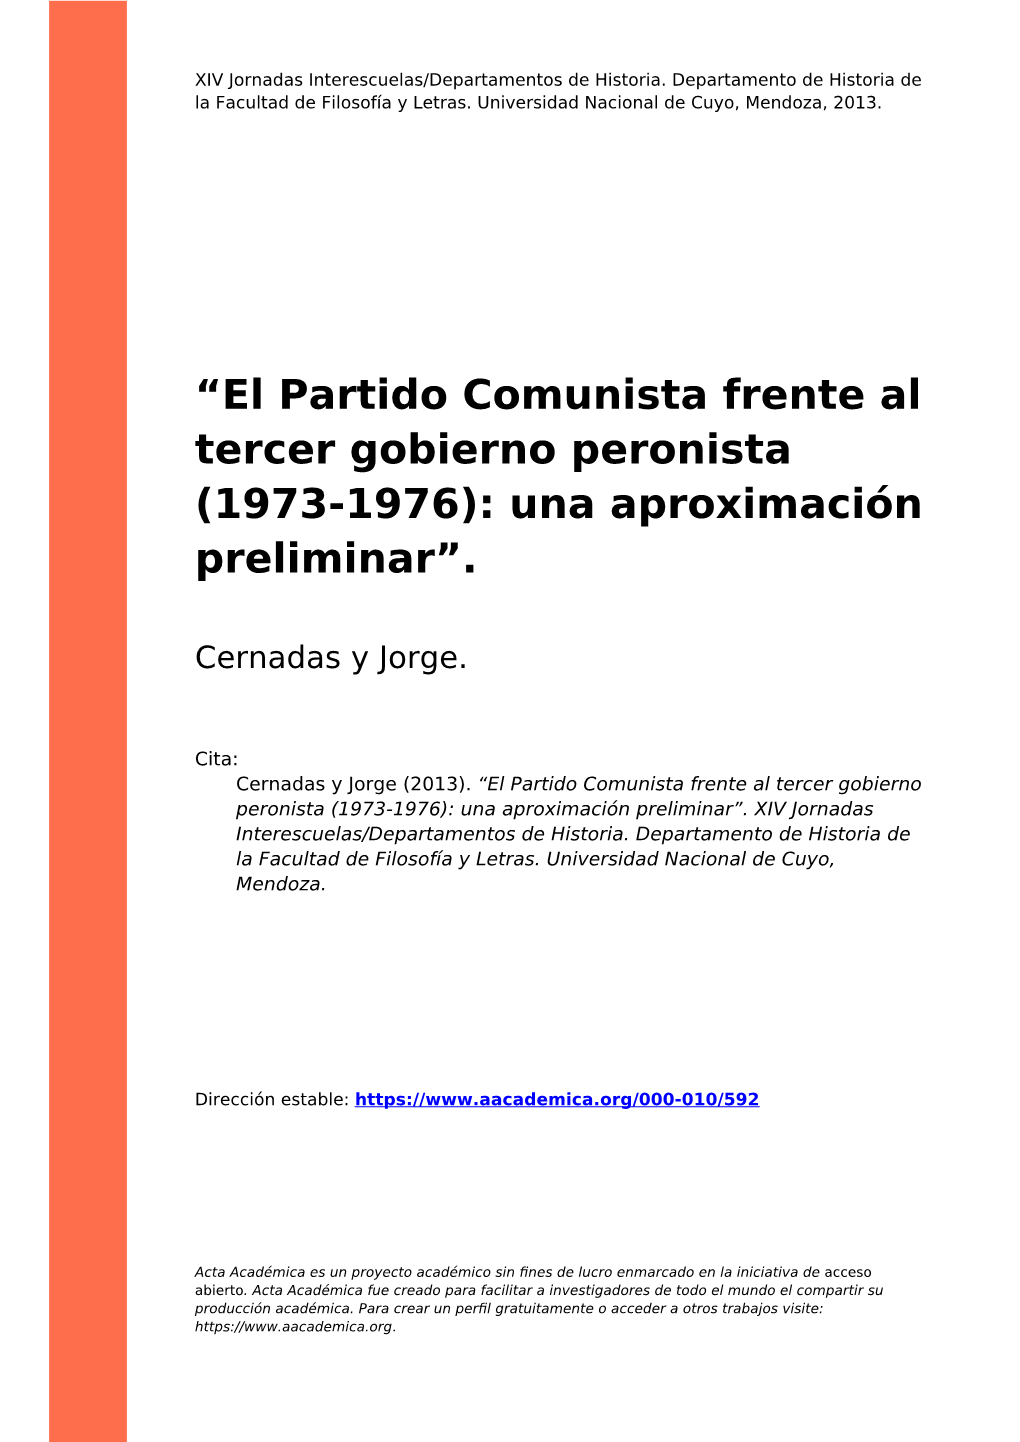 “El Partido Comunista Frente Al Tercer Gobierno Peronista (1973-1976): Una Aproximación Preliminar”